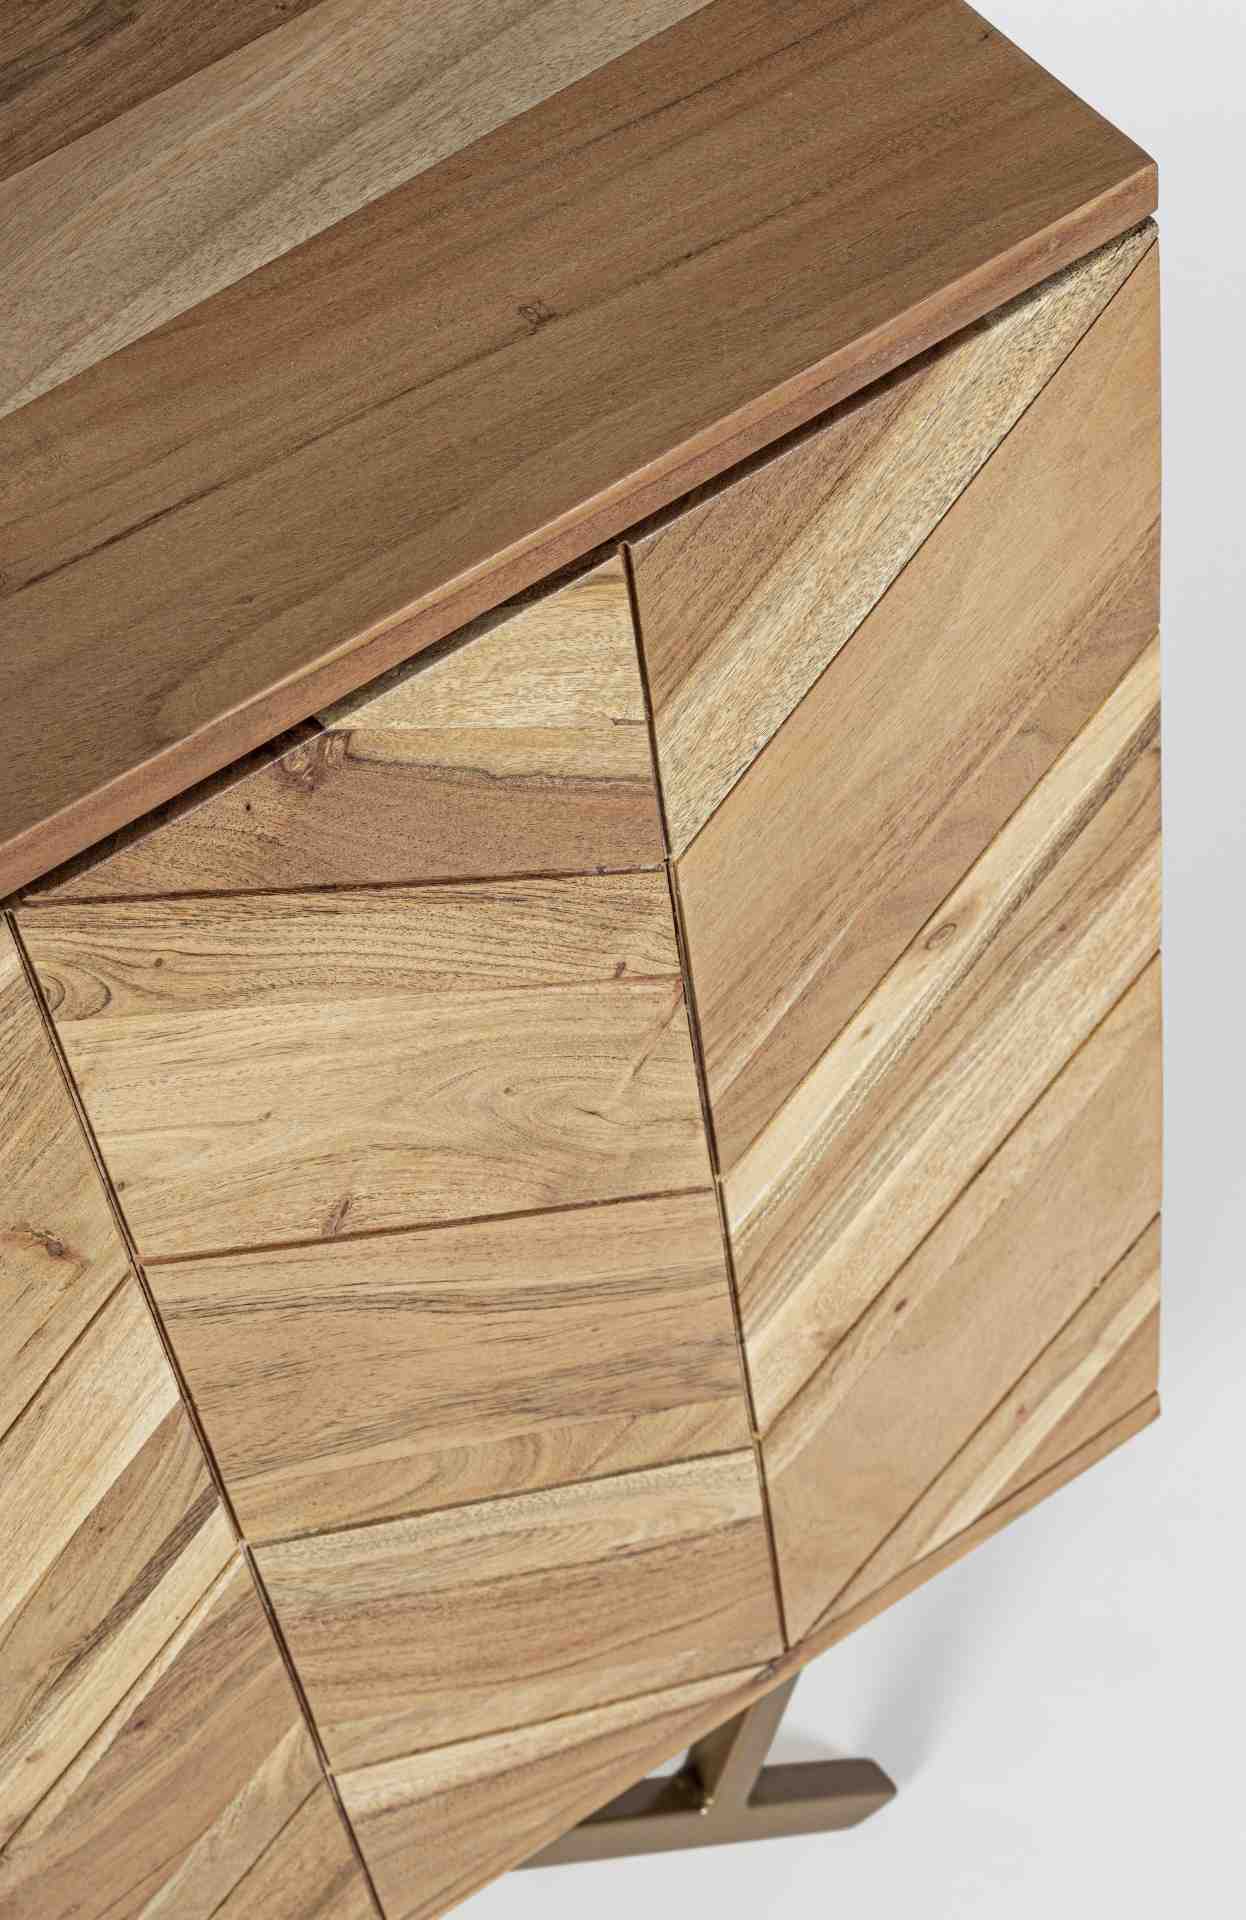 Das Sideboard Raida überzeugt mit seinem modernem Design. Gefertigt wurde es aus Akazien-Holz, welches einen natürlichen Farbton besitzt. Das Gestell ist aus Metall und hat eine goldene Farbe. Das Sideboard verfügt über zwei Türen und drei Schubladen. Die